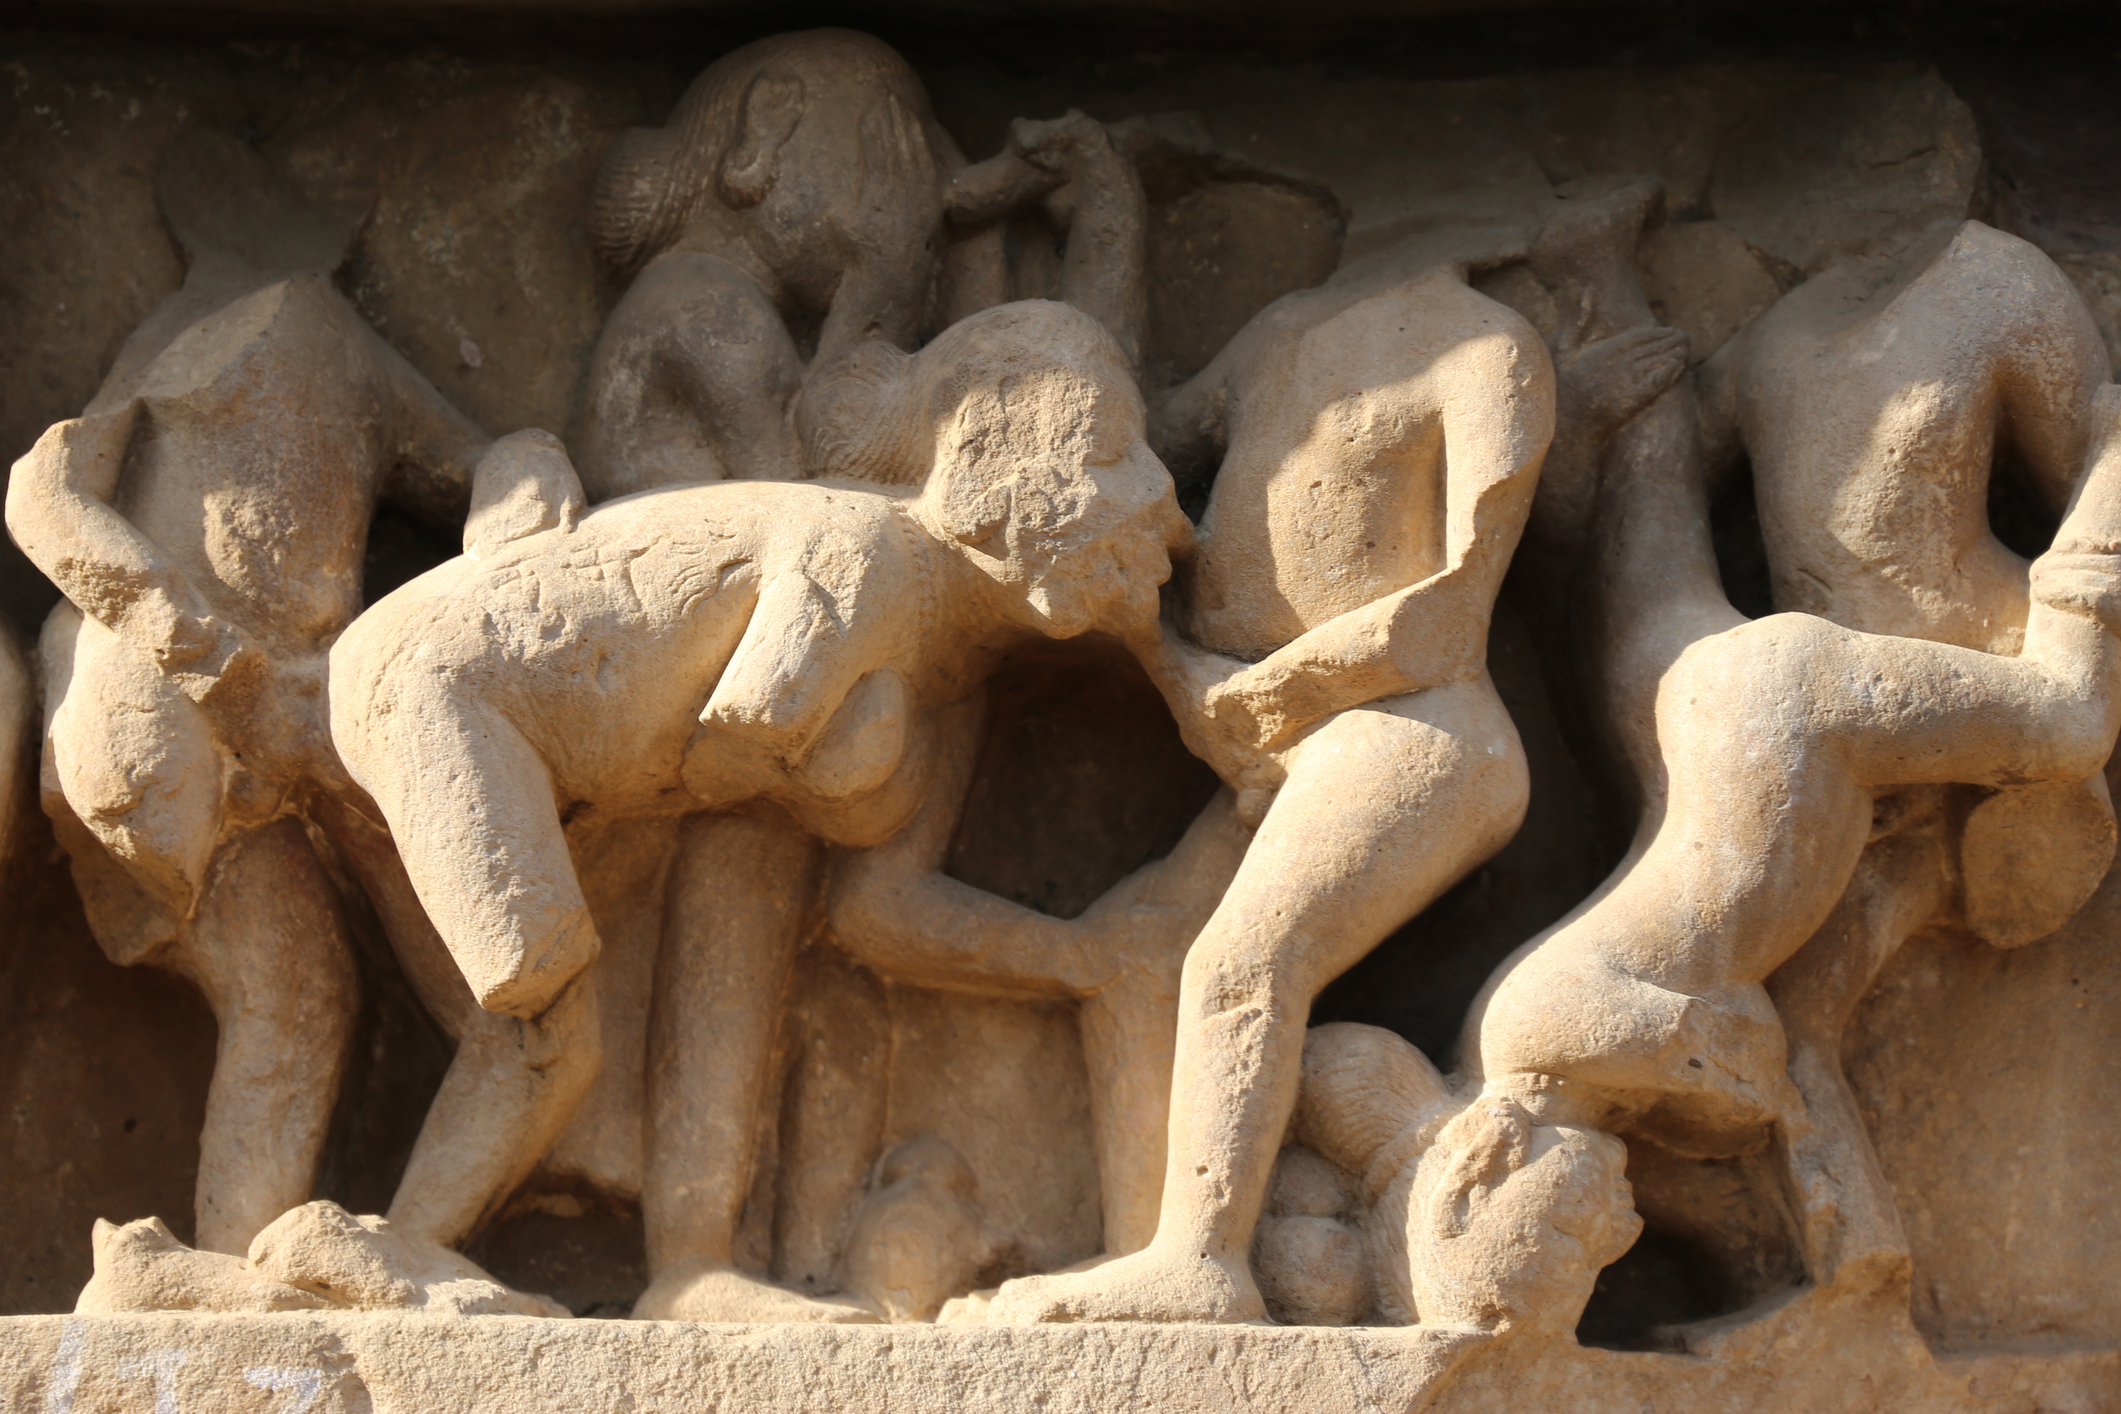 Храмовата украса е практически най-голямата галерия на еротичното изкуство в света - тя е част от сексуалното образование в древна Индия, като нагледни примери за Кама Сутра. Някои специалисти твърдят, че скулптурната еротика има дълбоко религиозен характер и символизира връзката на човешката душа с боговете. Други смятат, че такива скулптури предпазват храма от гръмотевици: богът на дъжда Индра е един от покровителите на любовта.